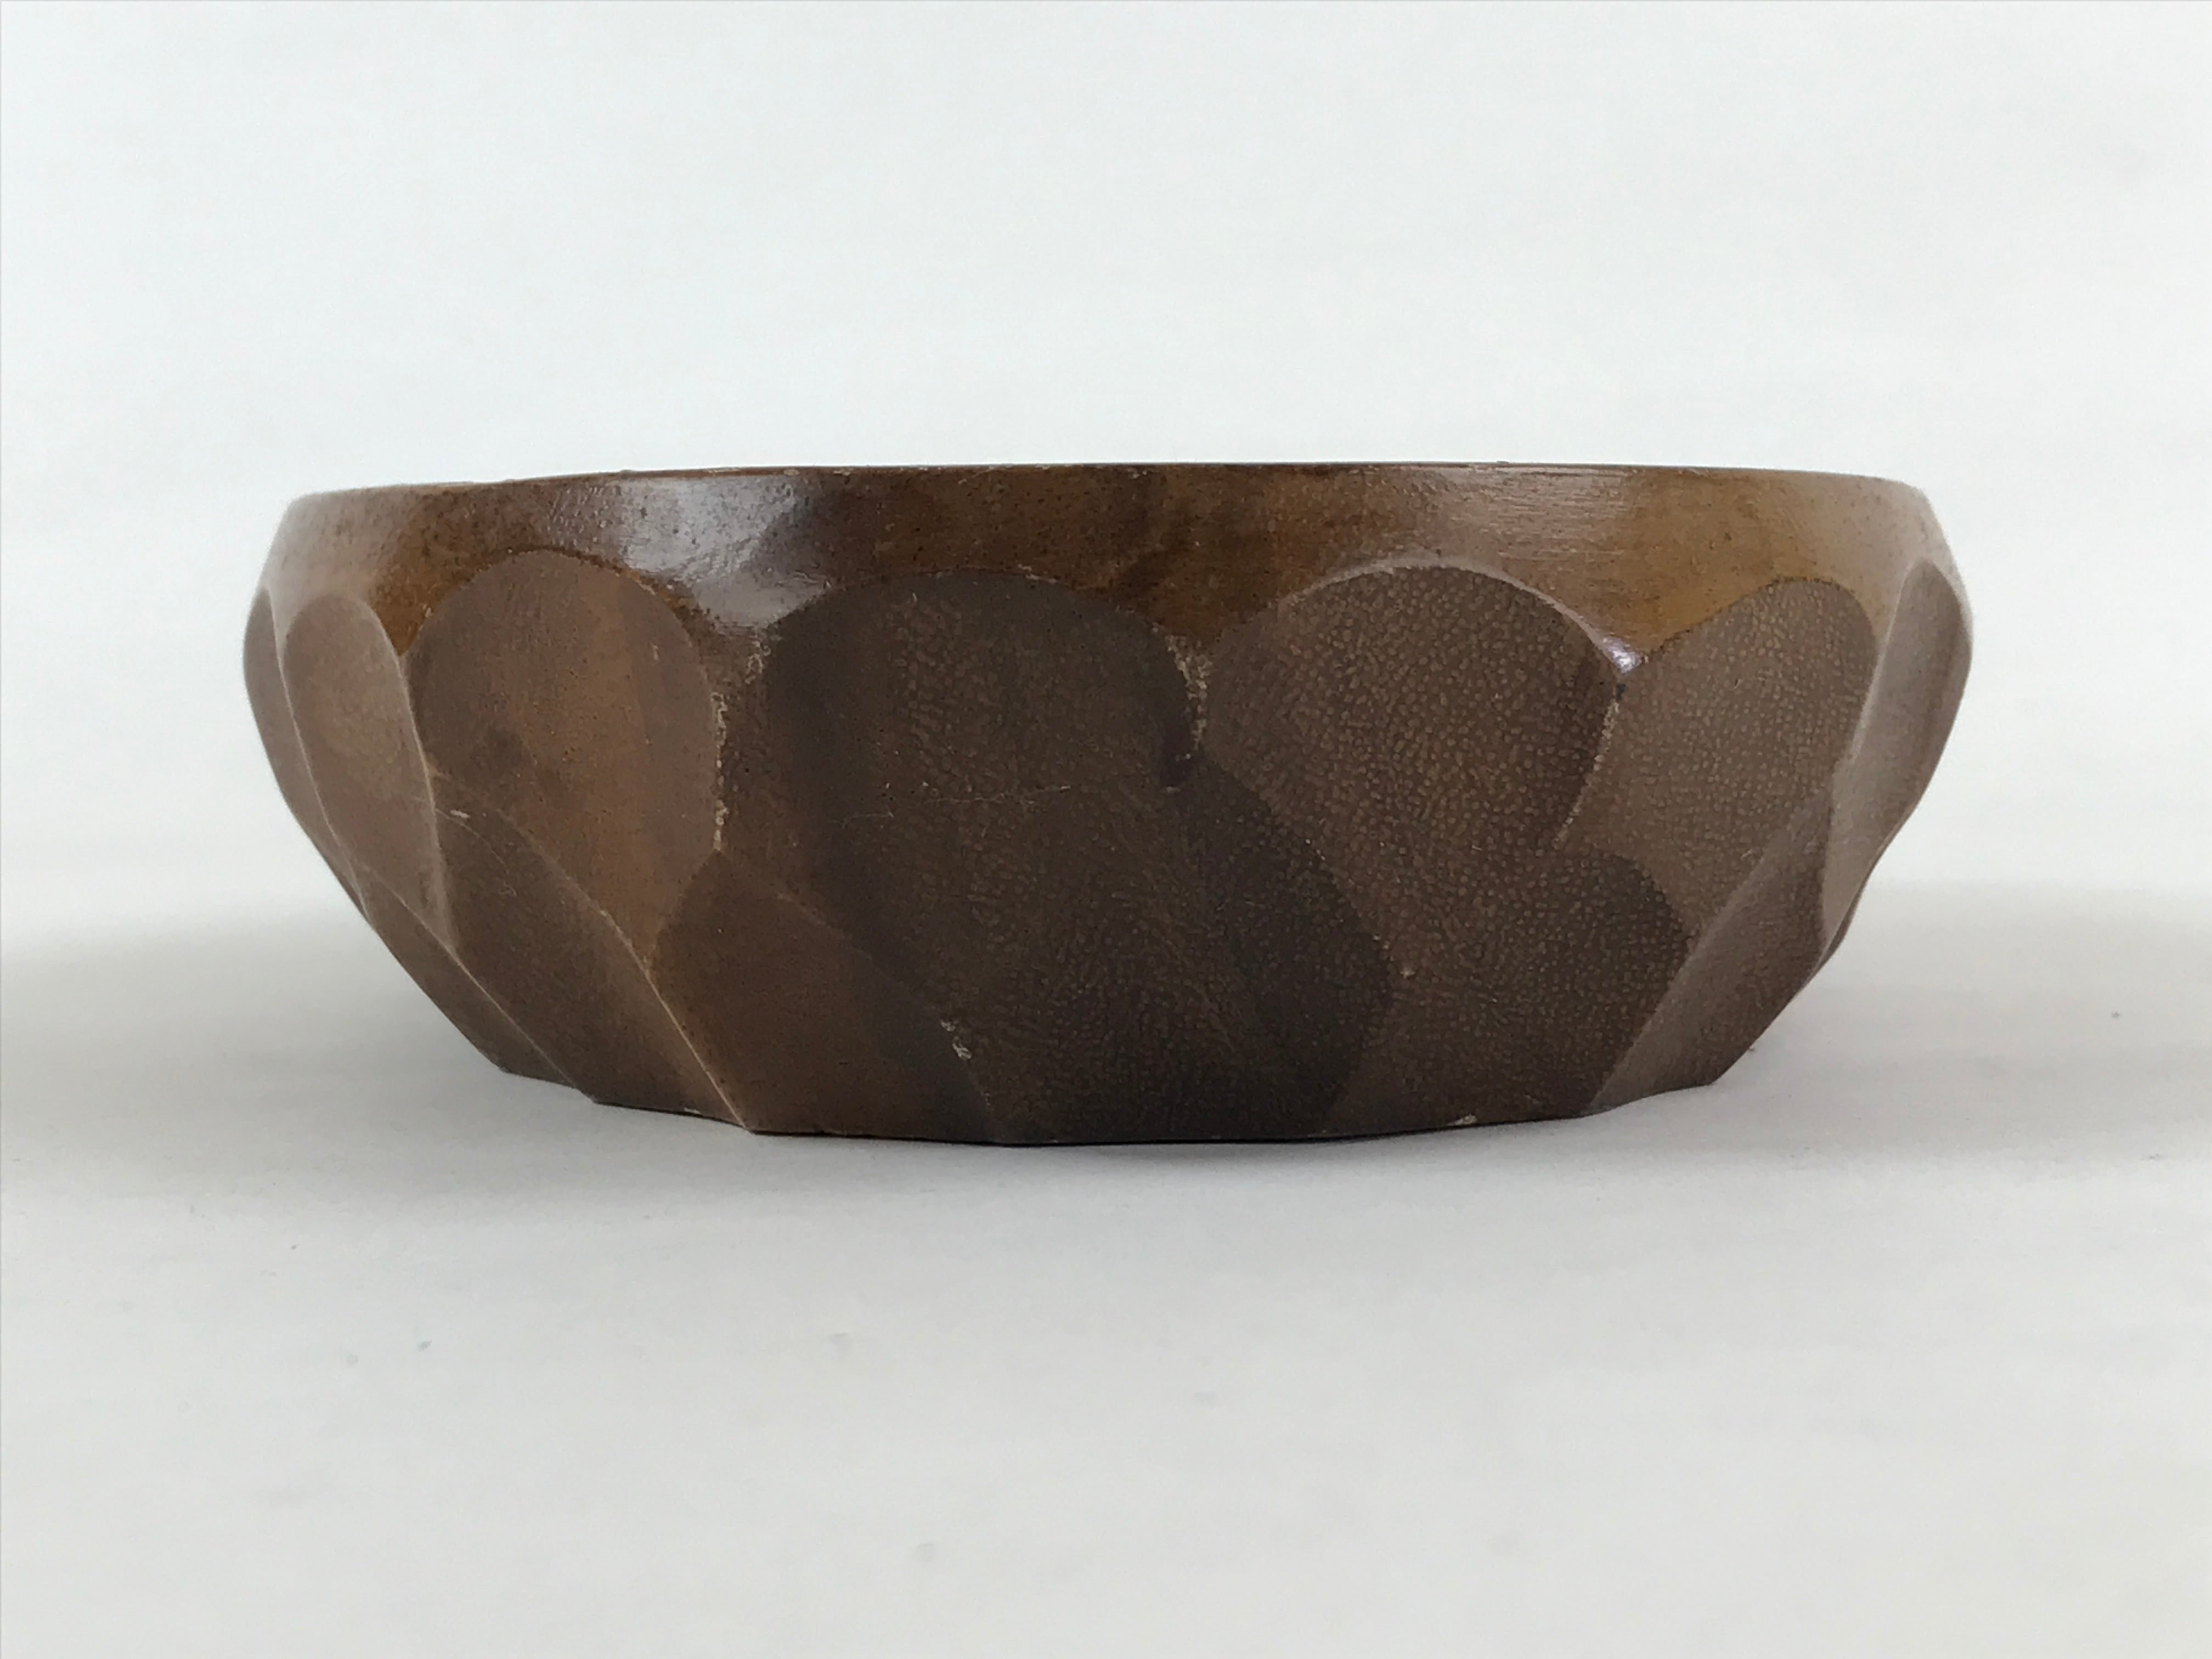 Japanese Wooden Snack Bowl Vtg Serving Kashiki Brown Oval Carved Design UR896